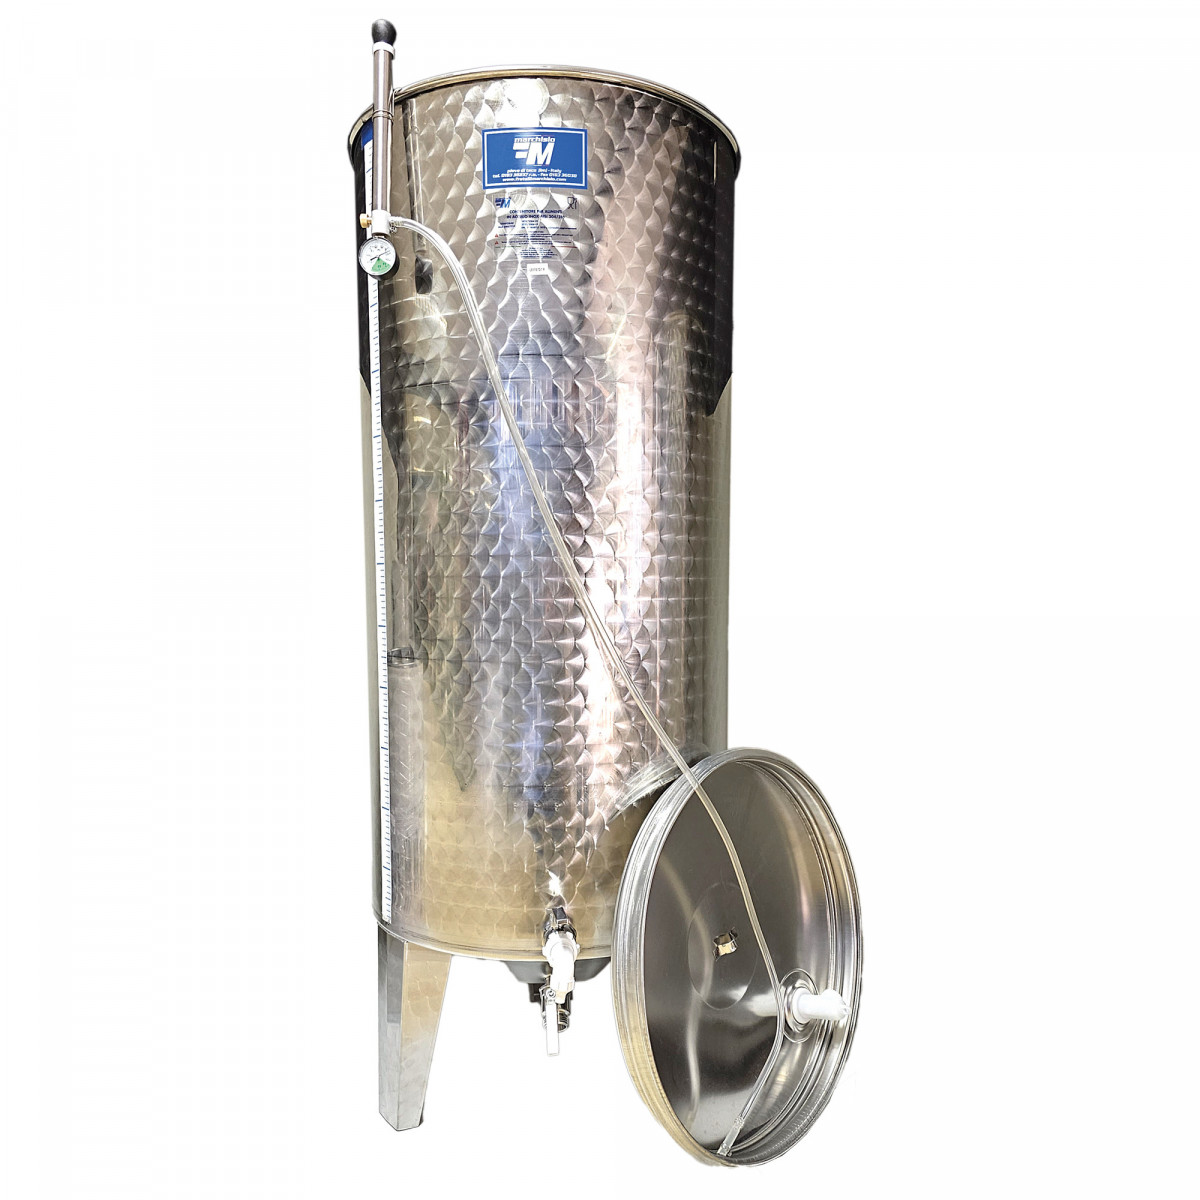 cuve de fermentation inox fond conique 1500 l • Brouwland